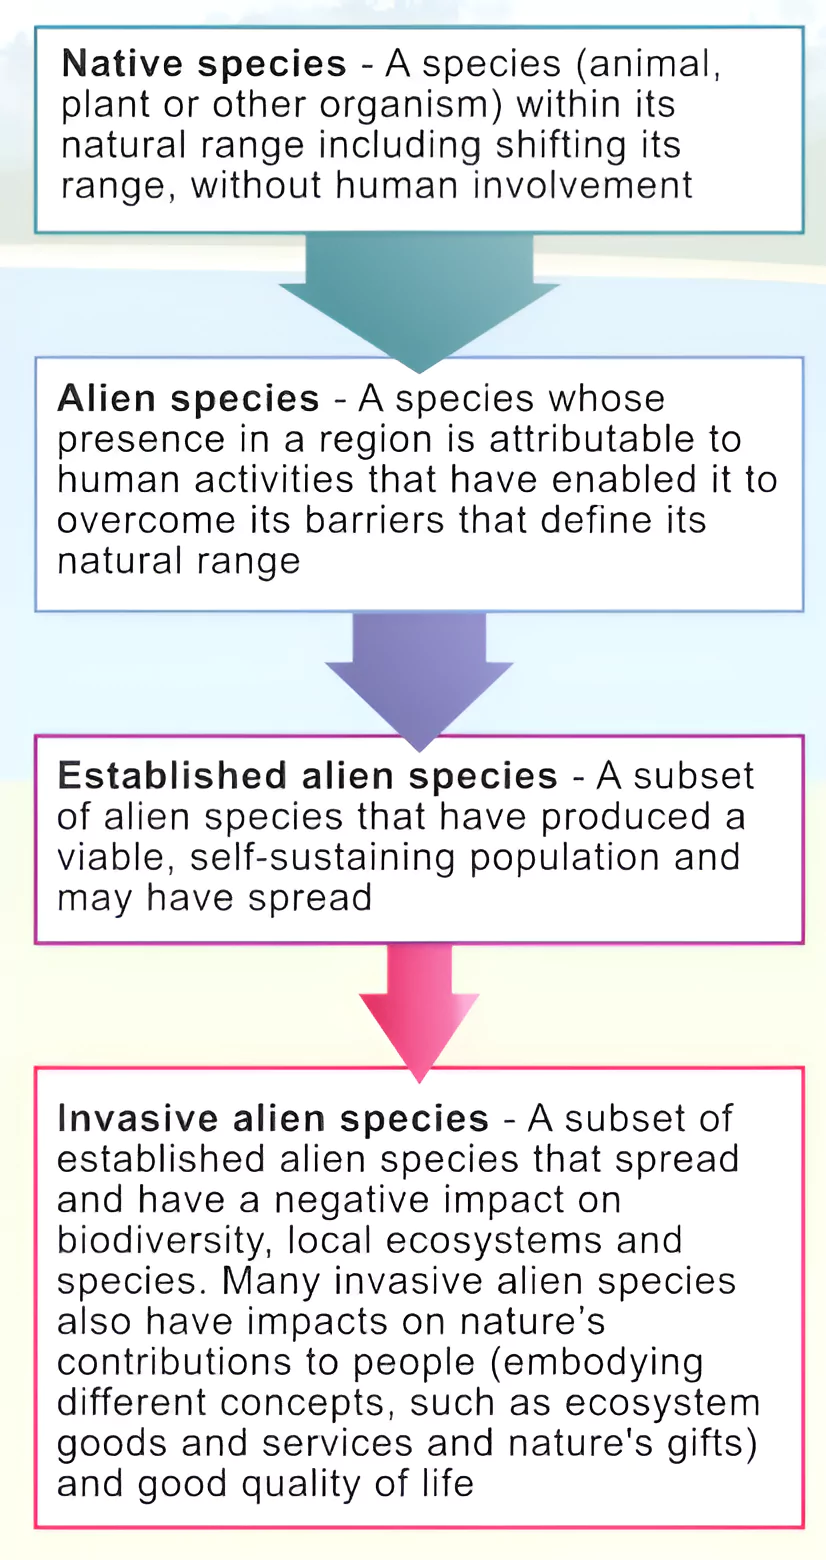 Invasive Alien Species
